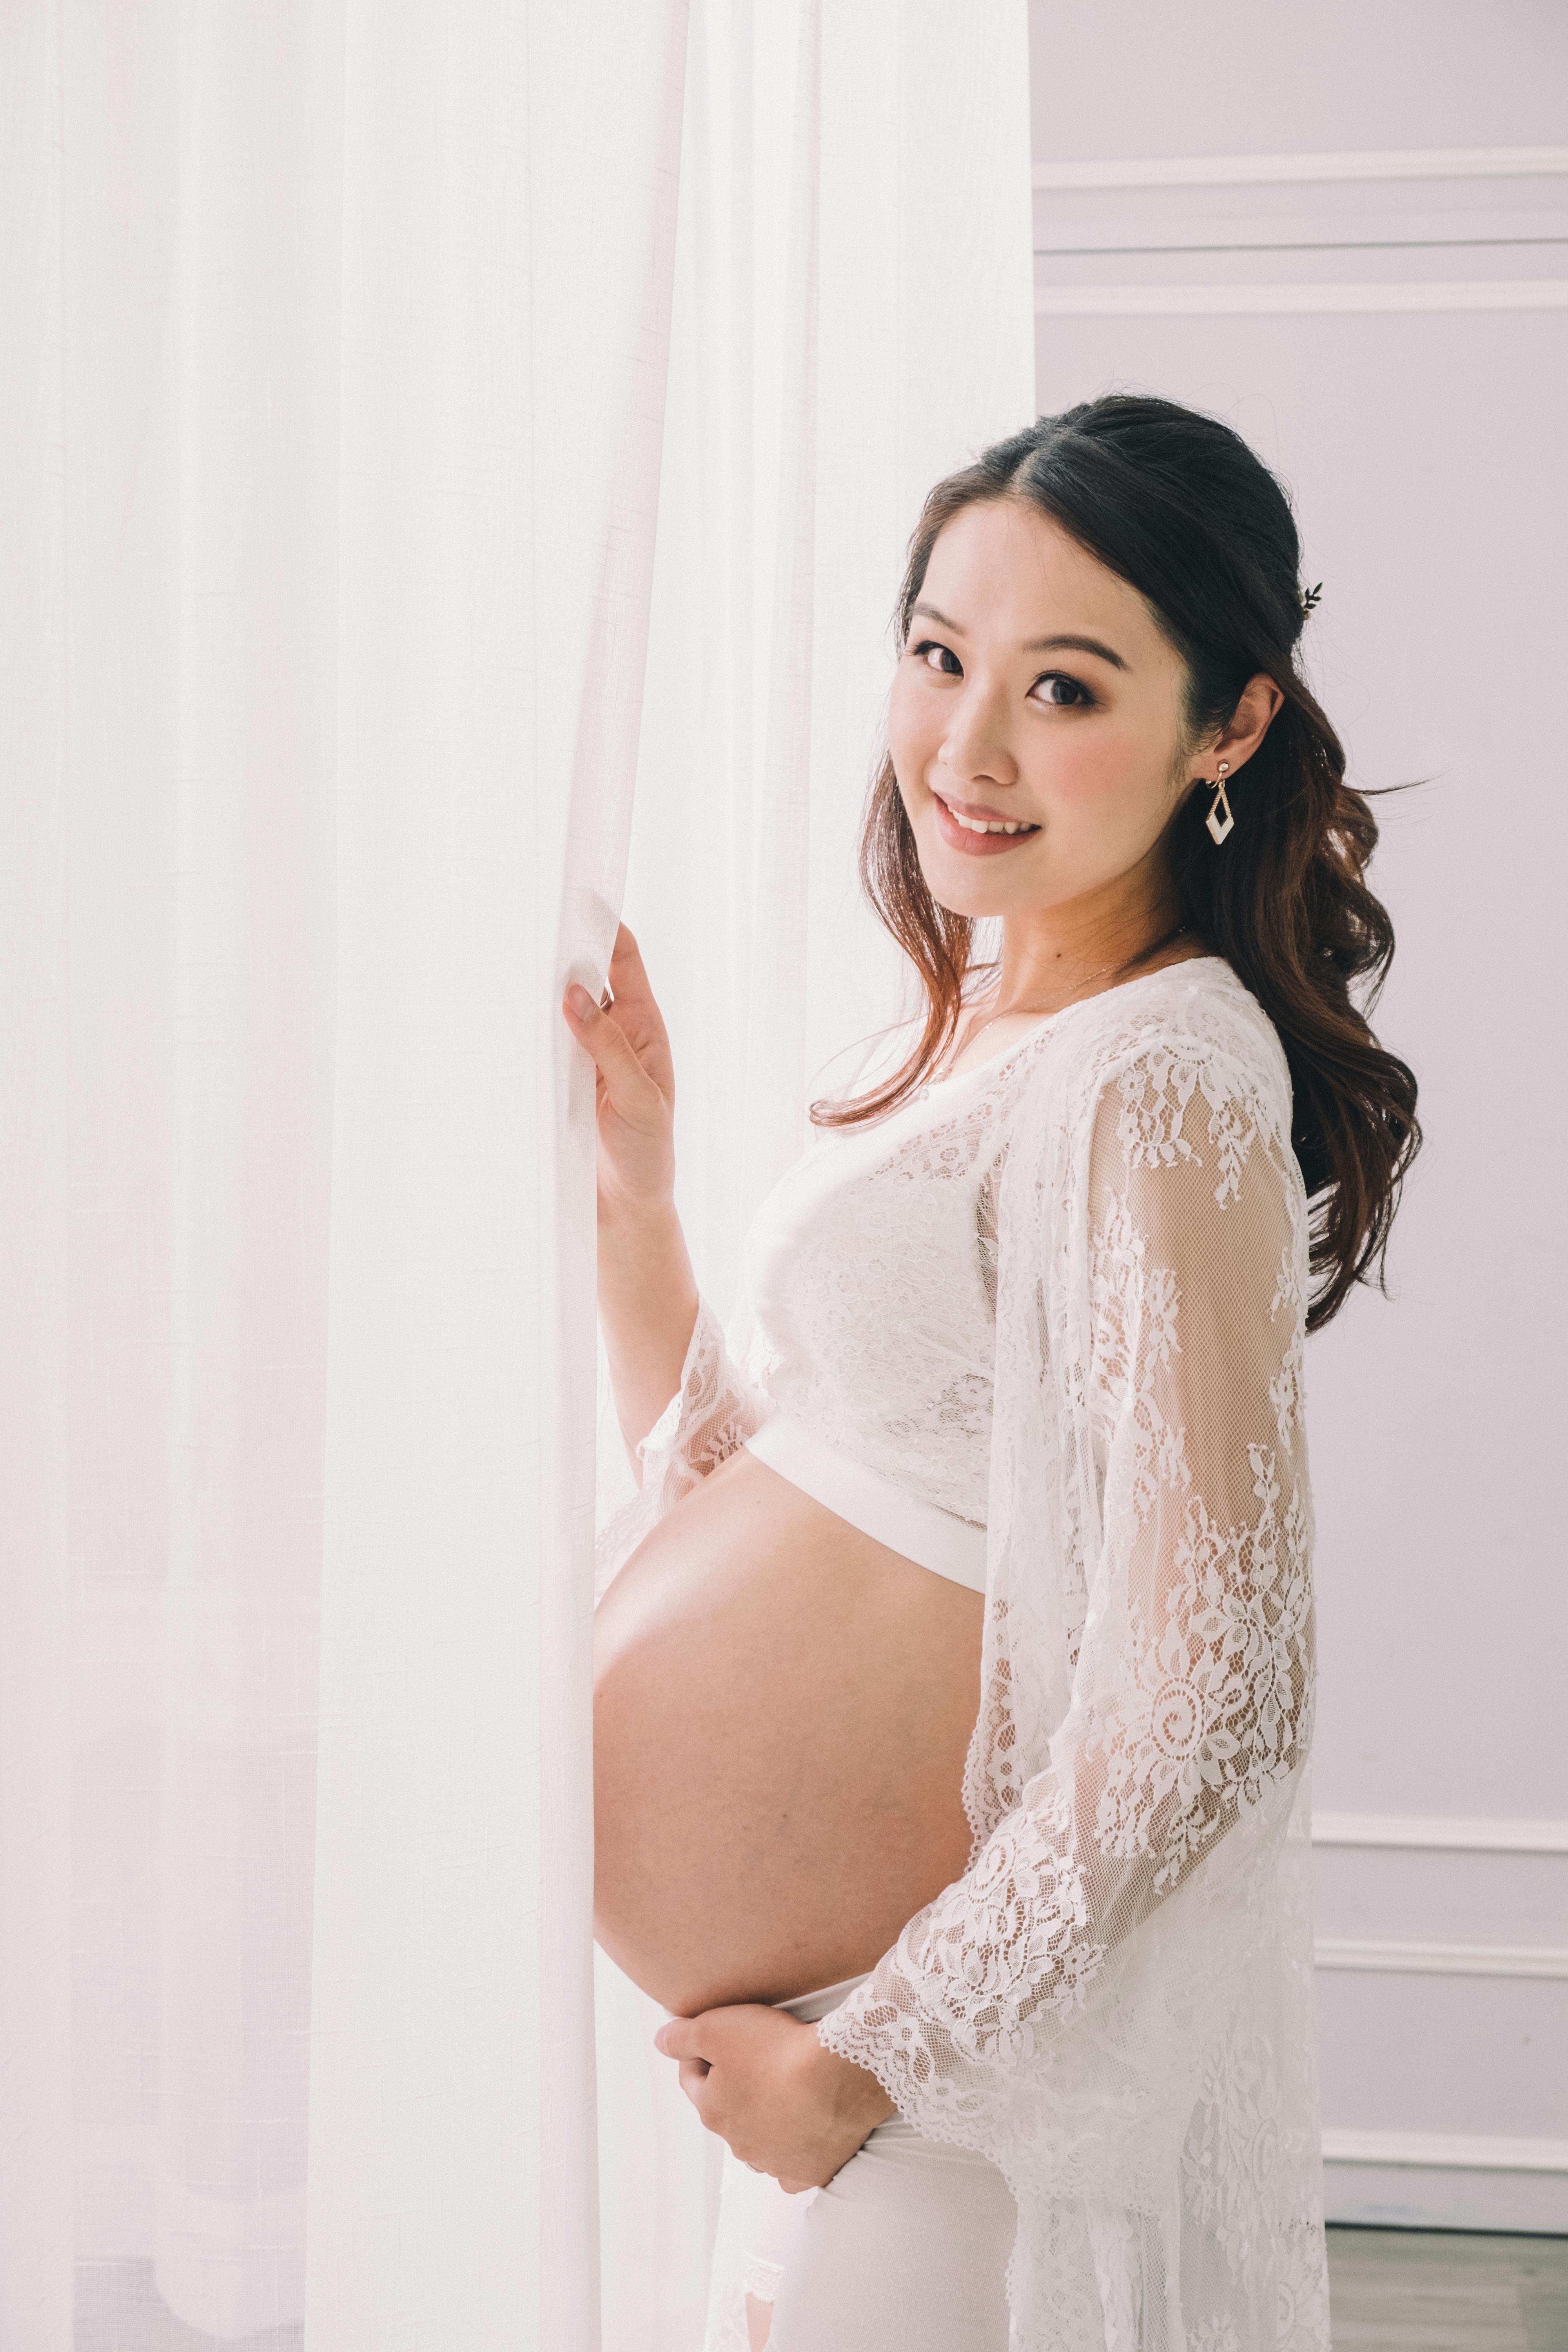 seguro para embarazadas
